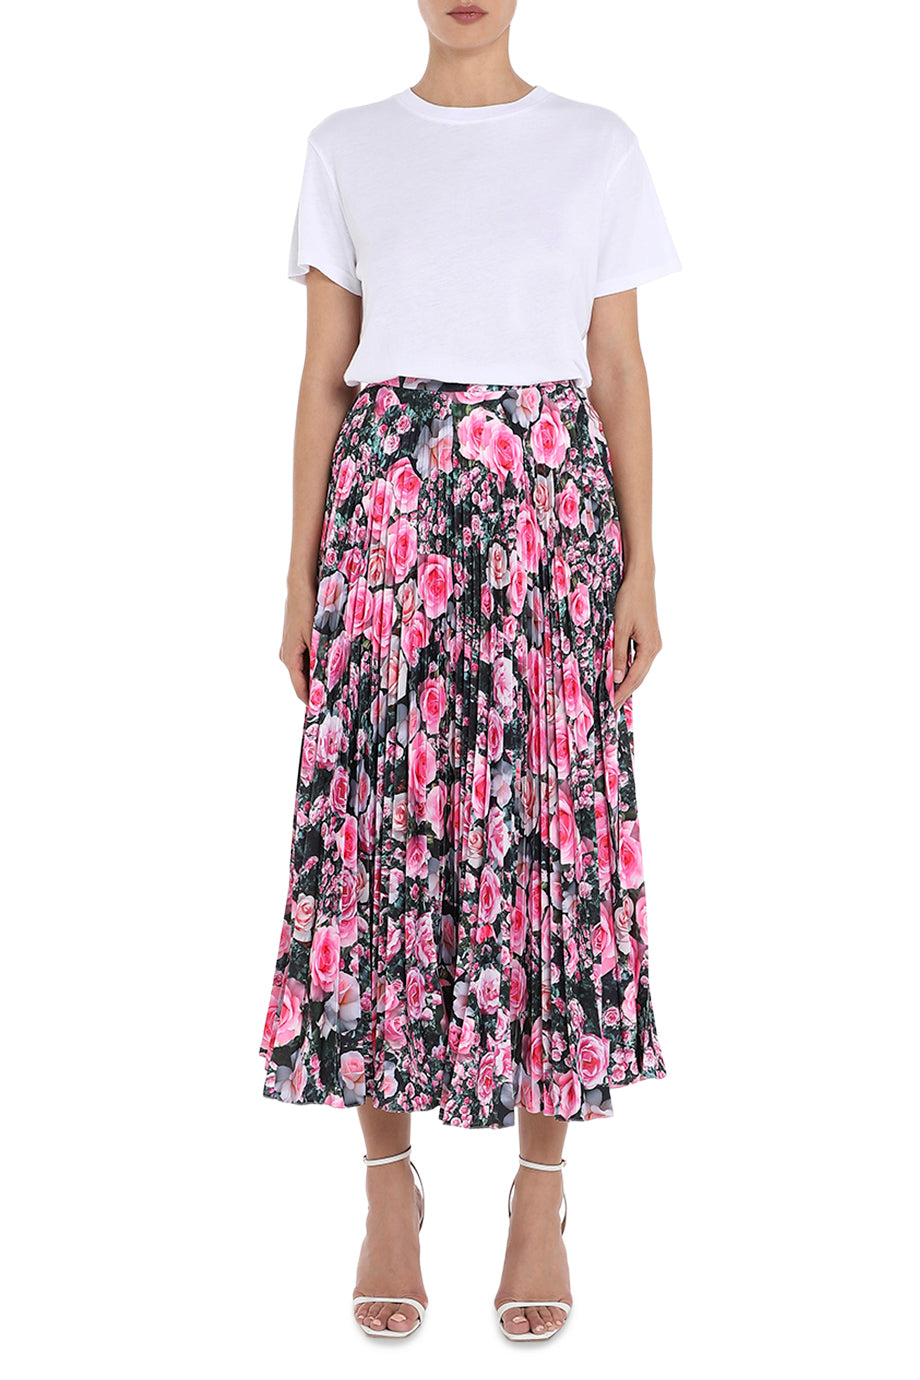 The Rose Garden Pleated Skirt